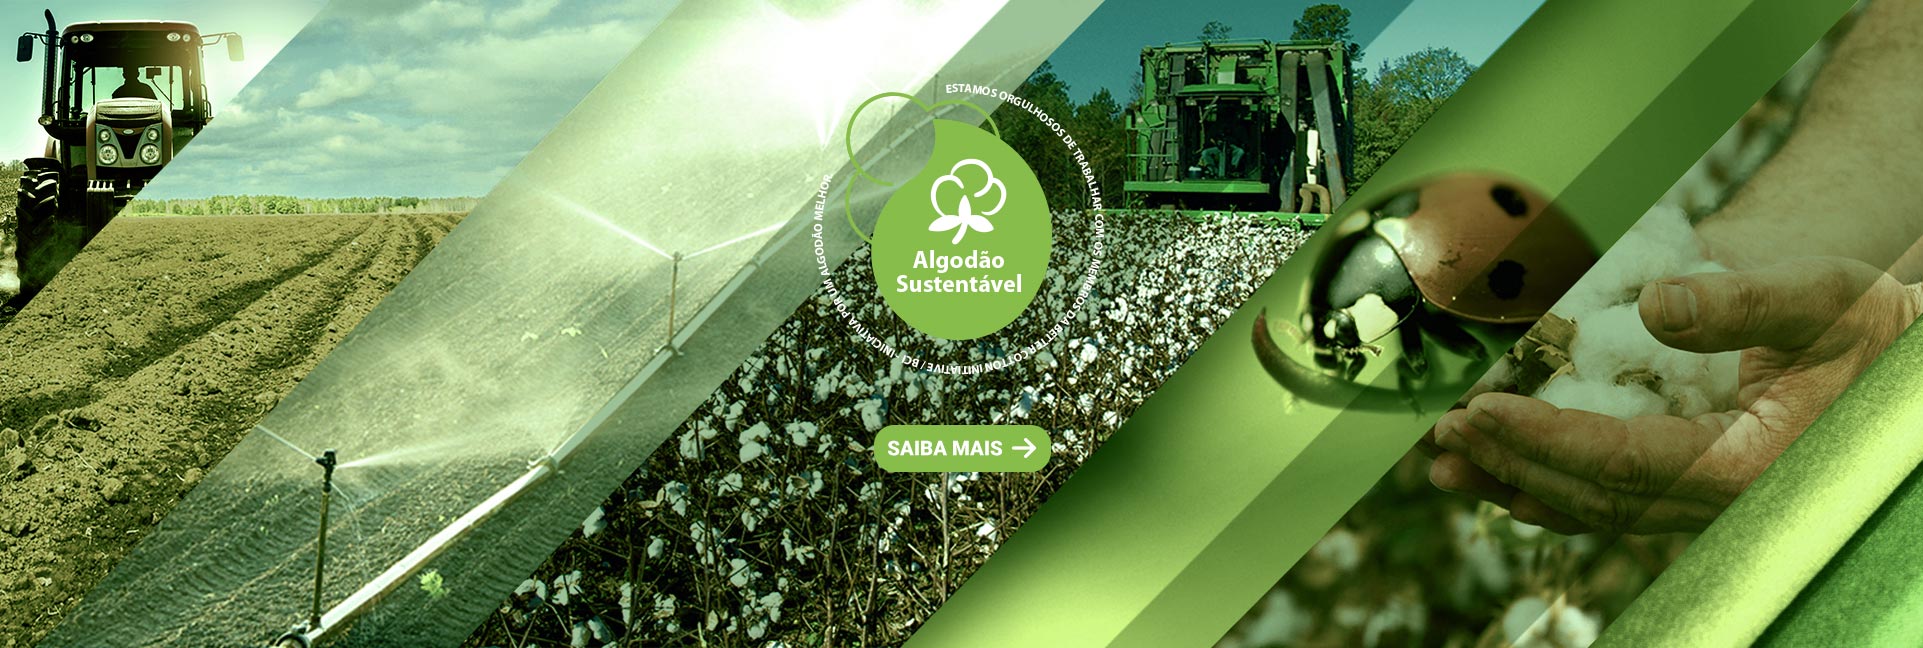 Algodão Sustentável - Política de Algodão Licenciado BCI - Better Cotton Initiative